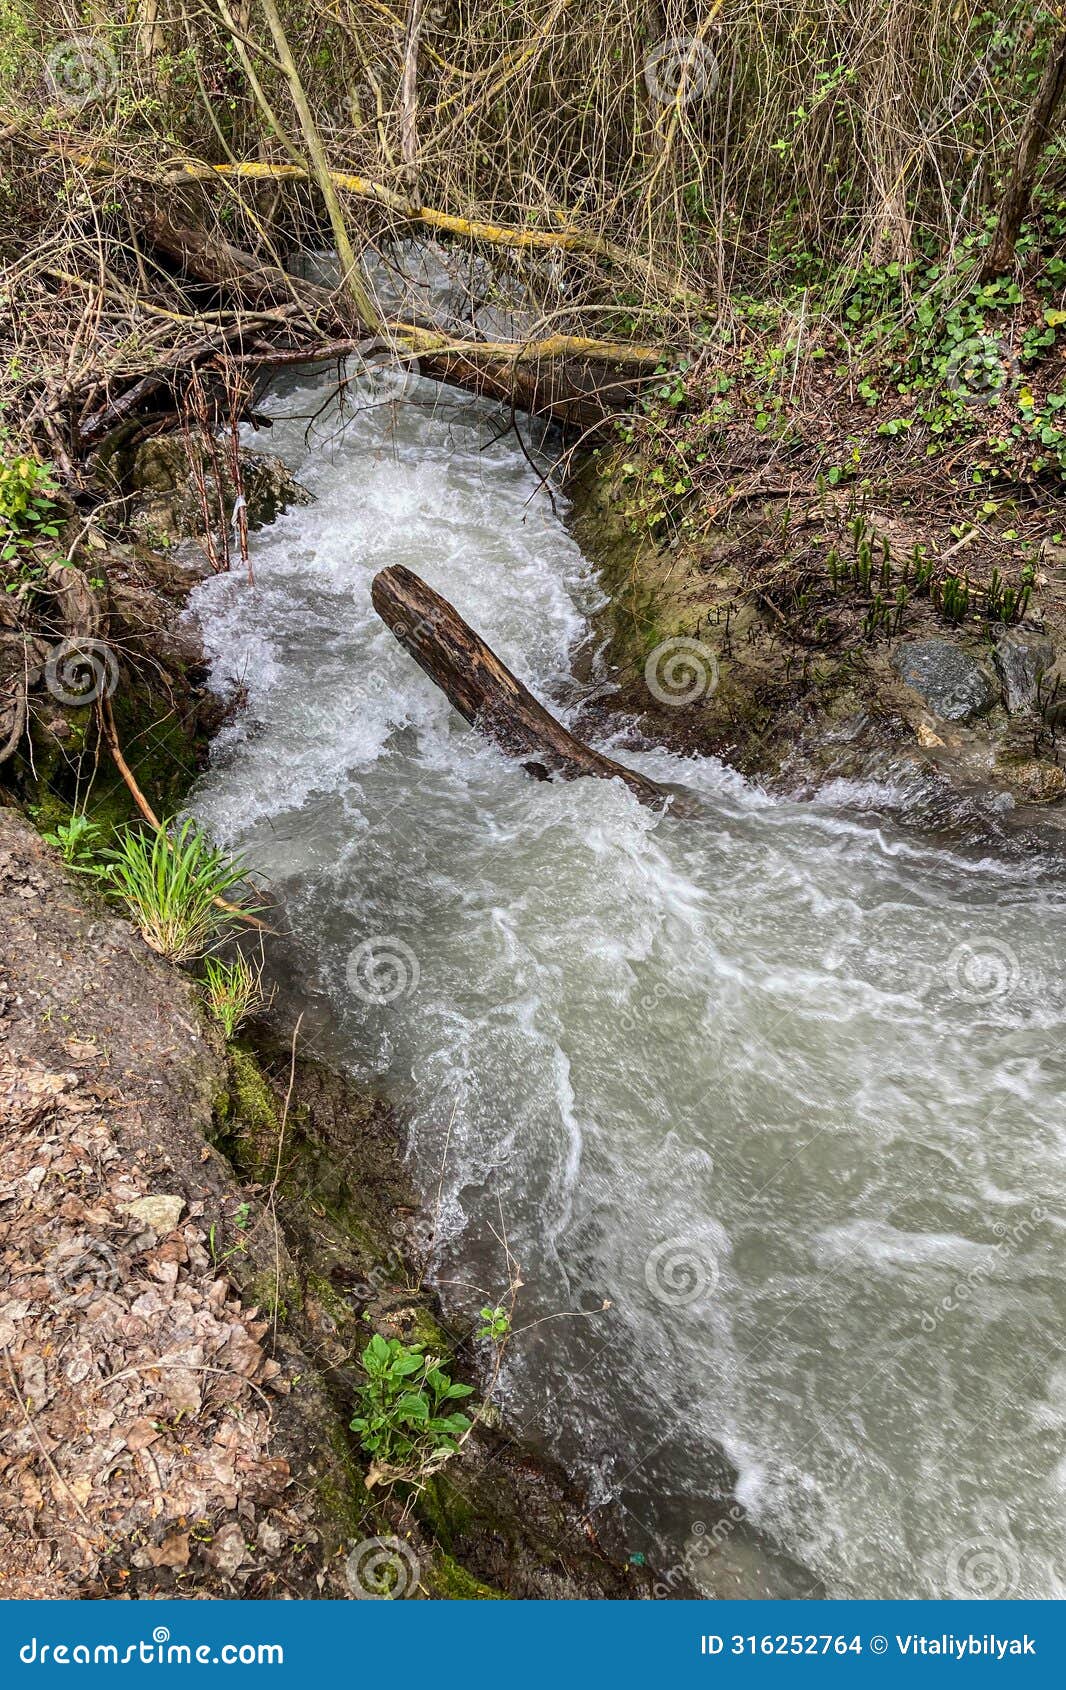 hiking trail of sabina over monachil river in monachil, granada